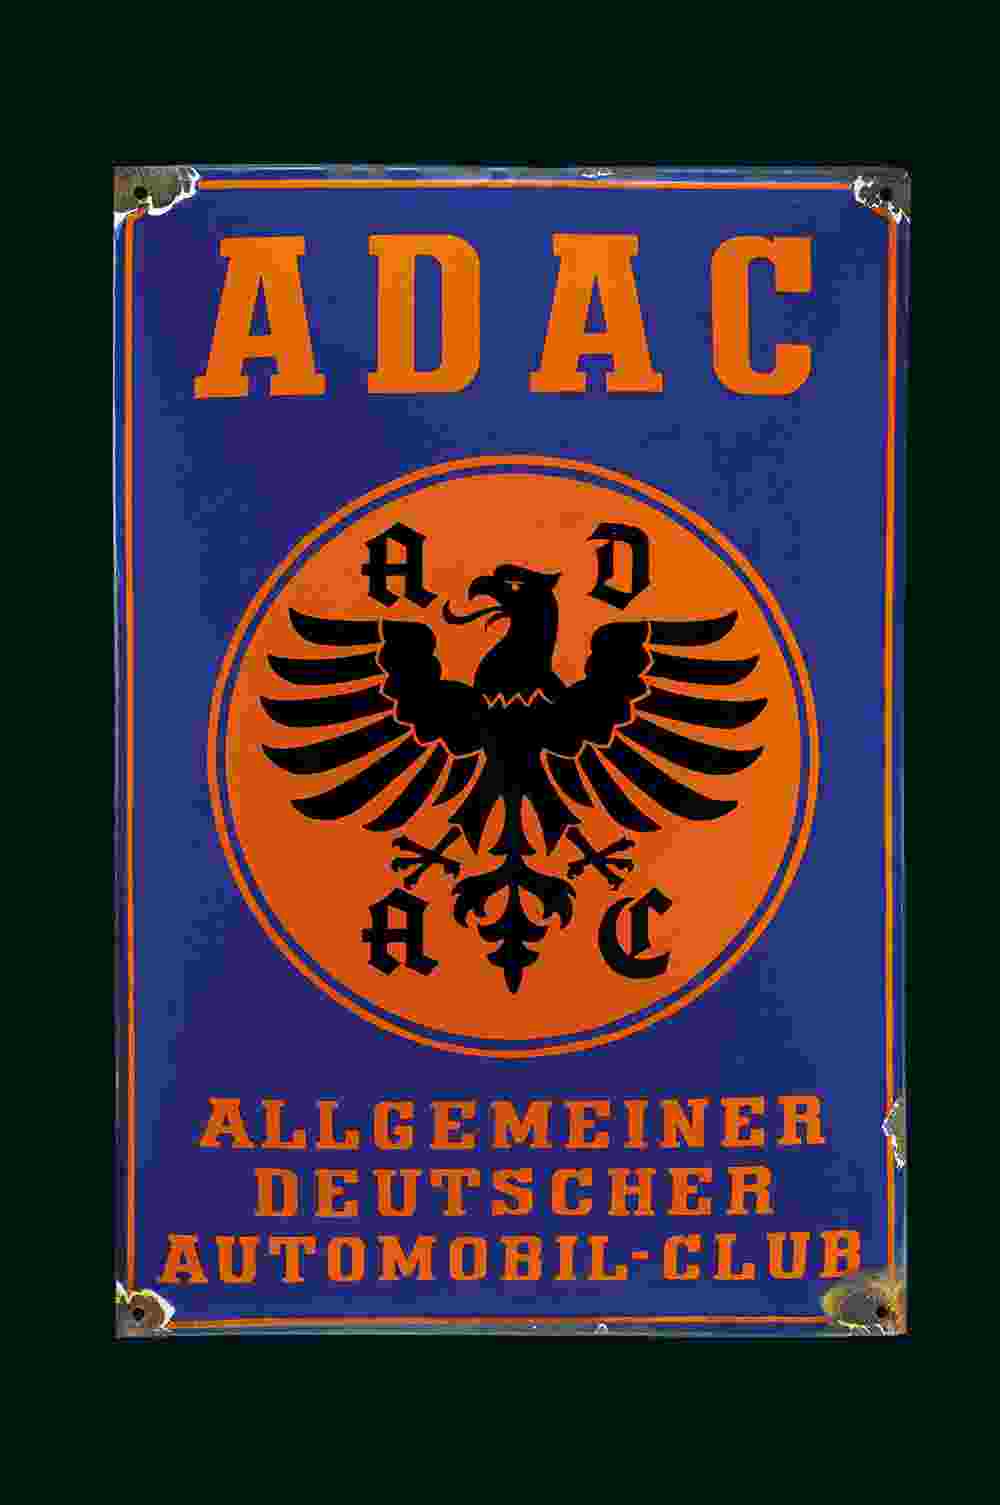 ADAC 